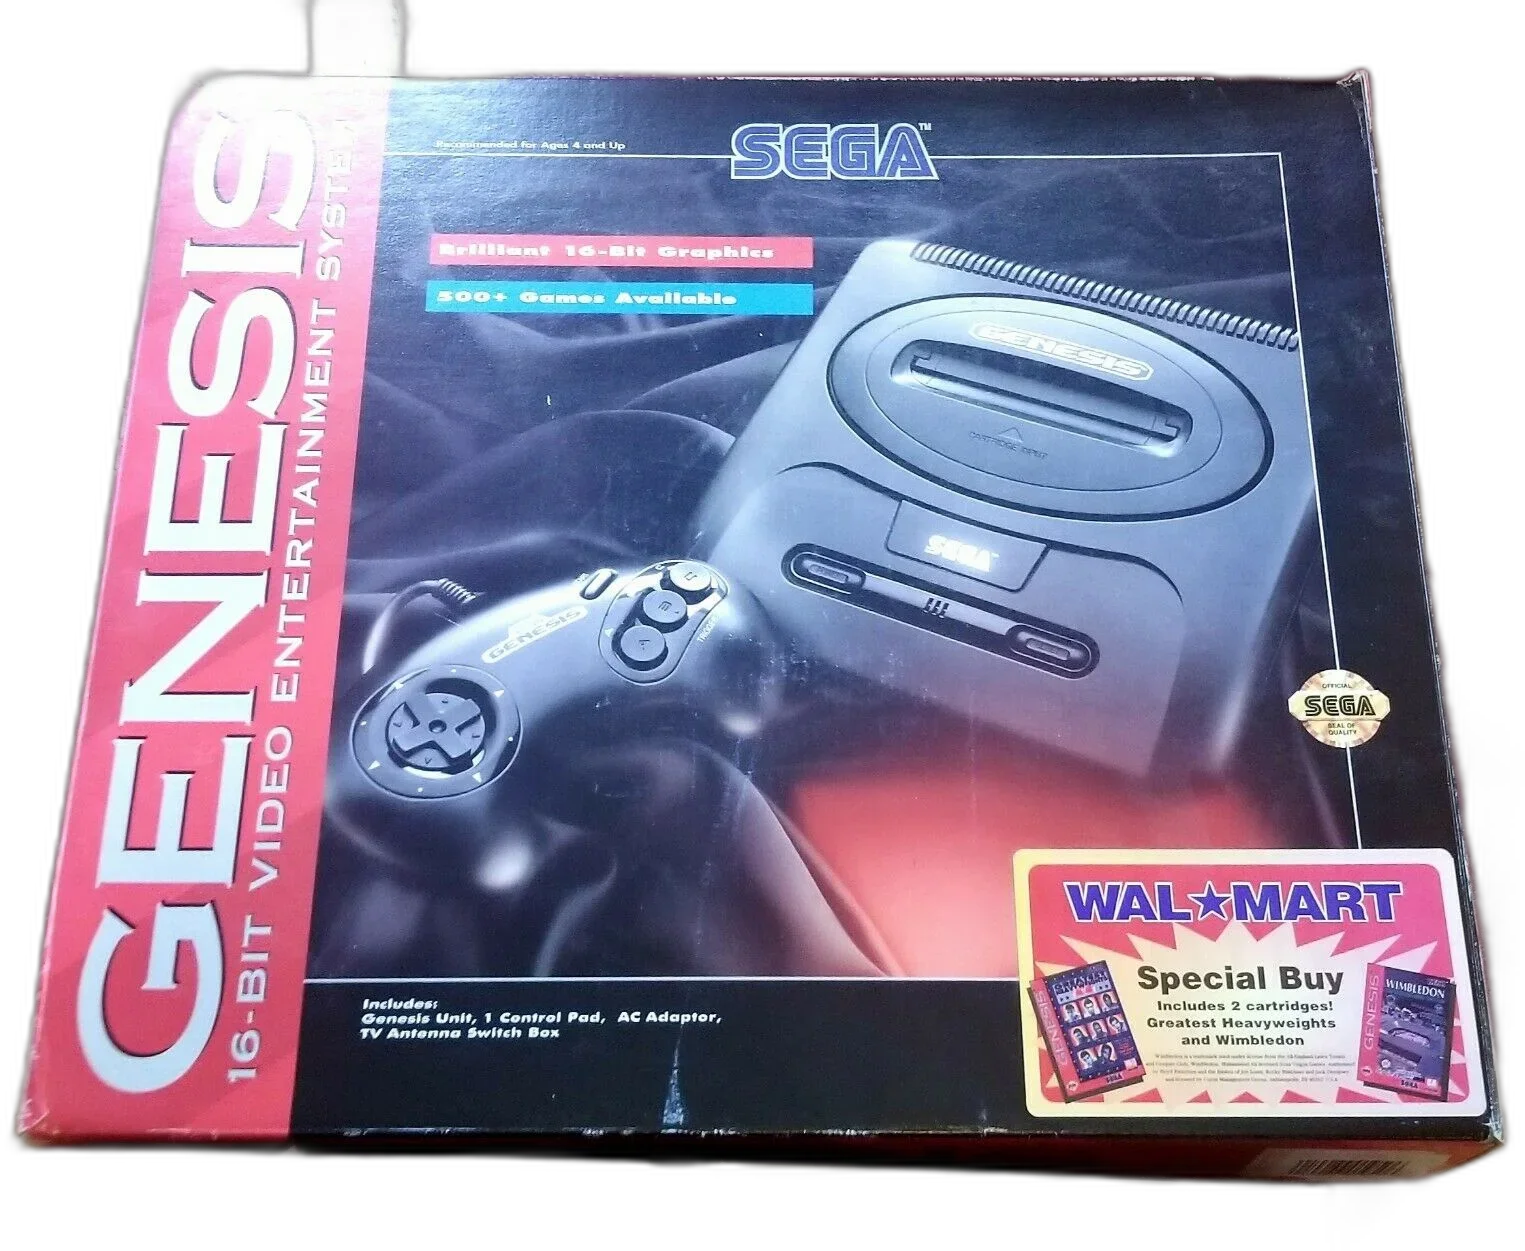  Sega Genesis Model 2 Walmart Bundle